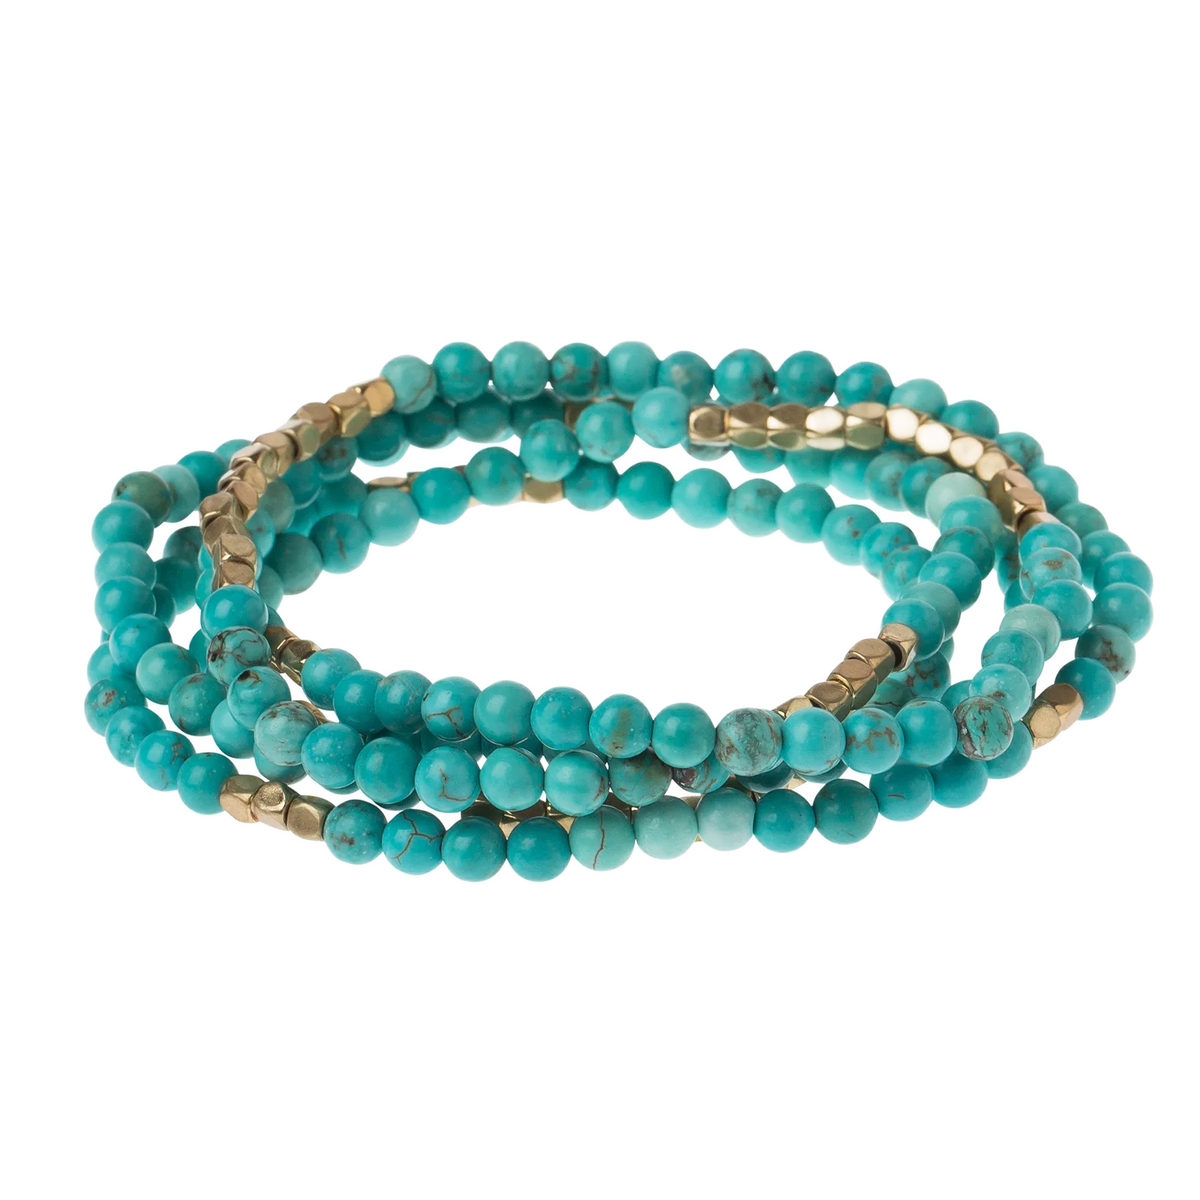 Stone Wrap Bracelet/Necklace - Turquoise/Gold